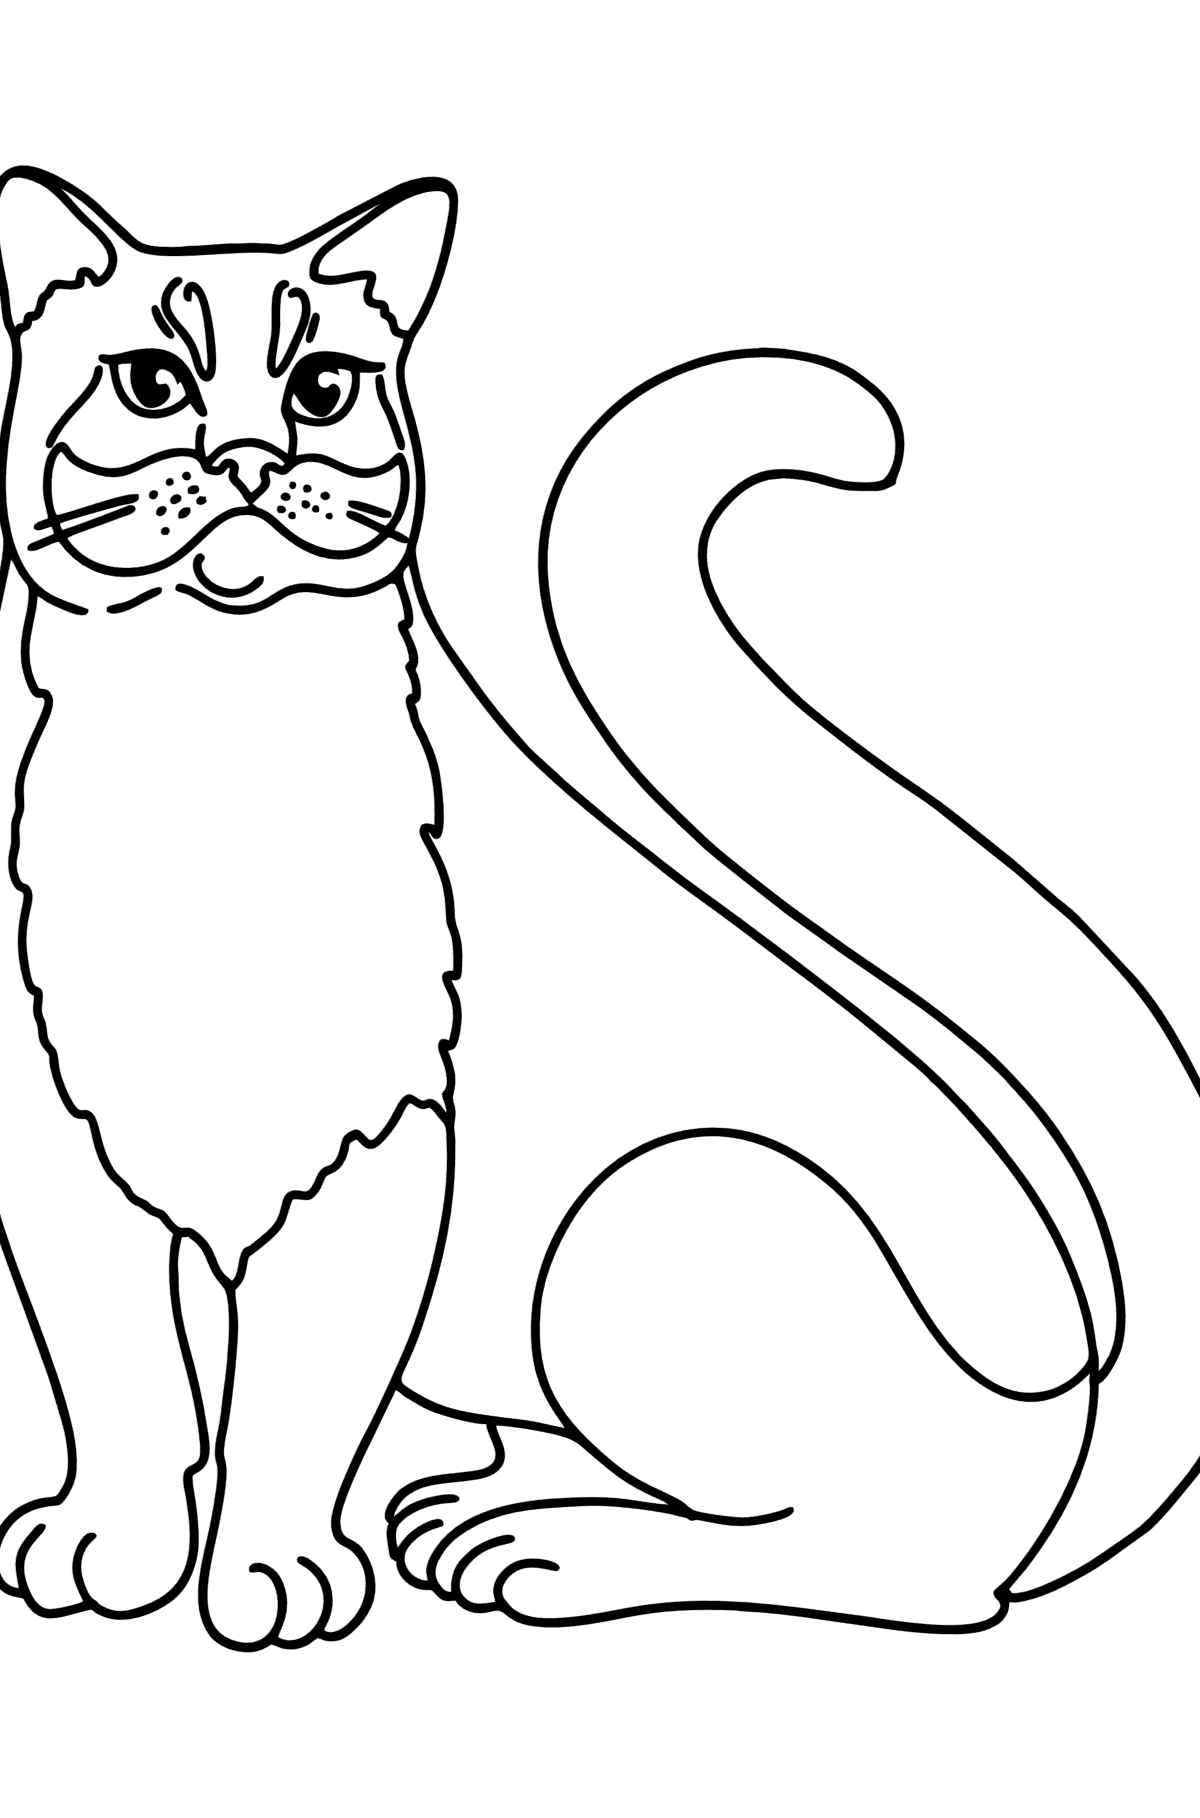 Раскраска Русская Голубая кошка - Картинки для Детей